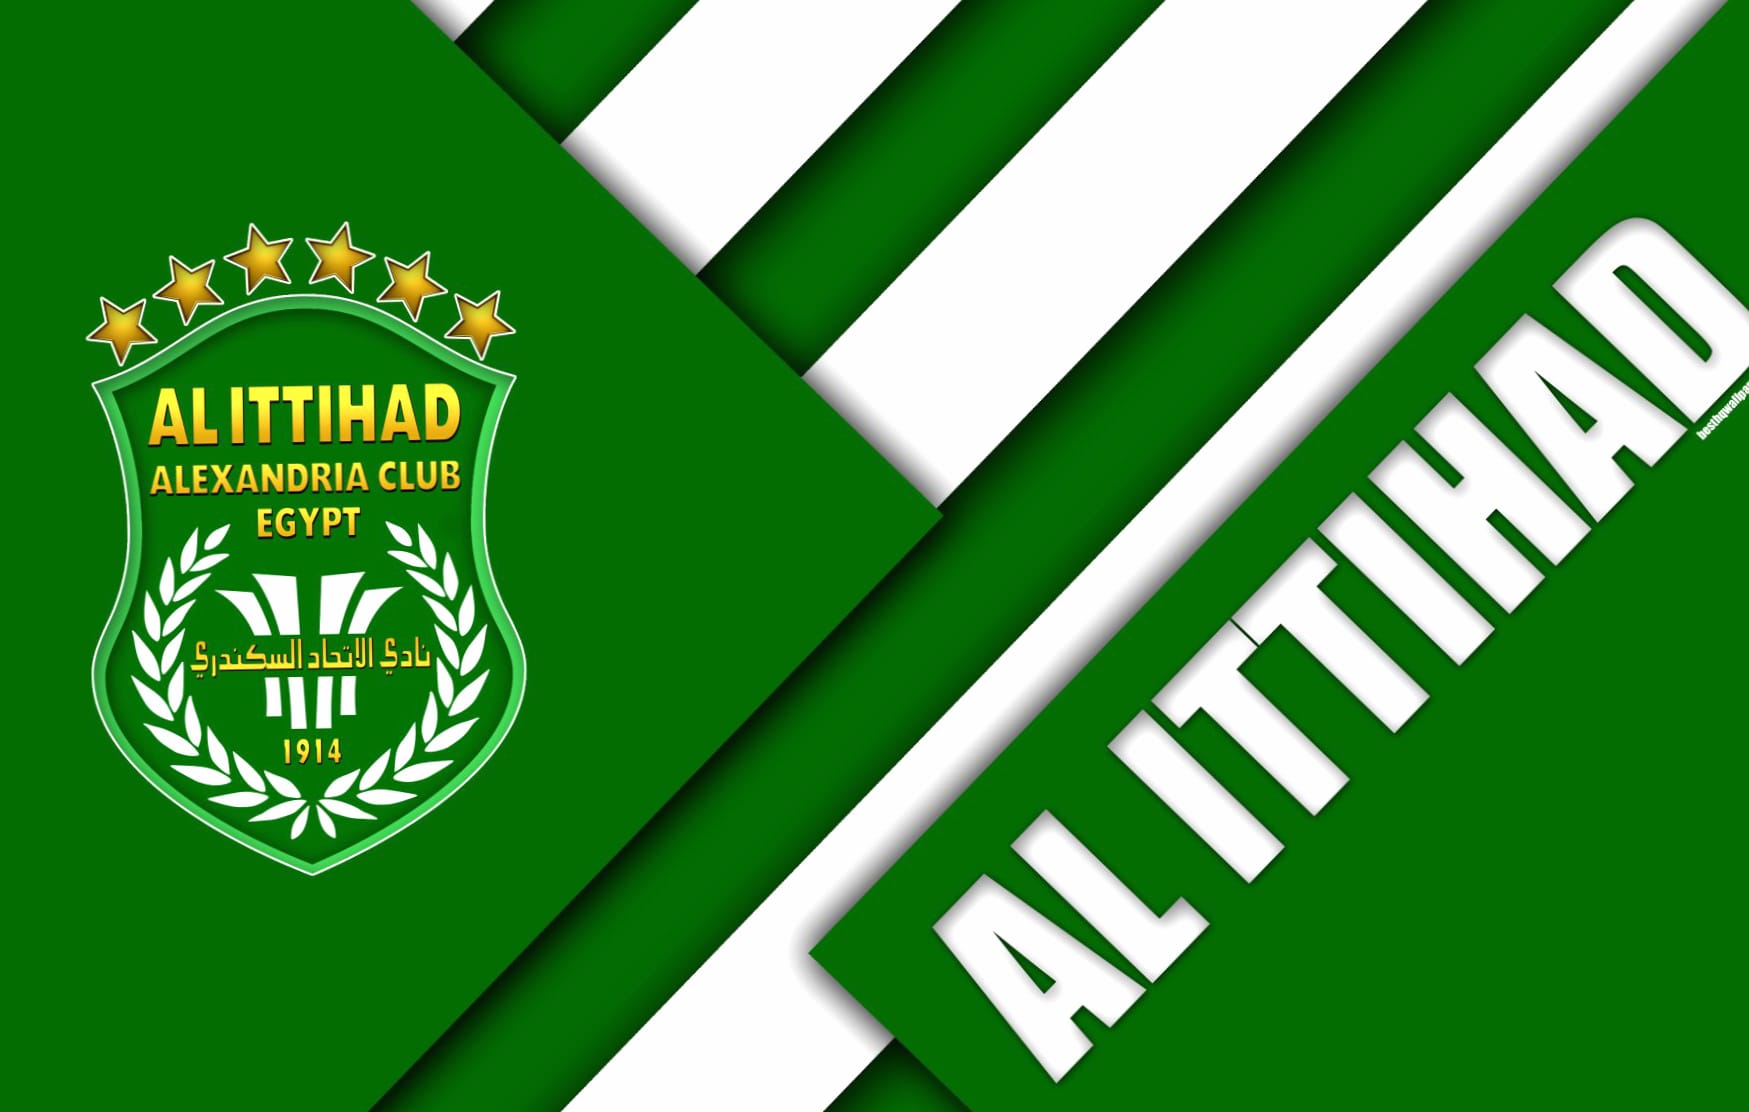 Al Ittihad Alexandria Club at 1280 x 960 size wallpapers HD quality